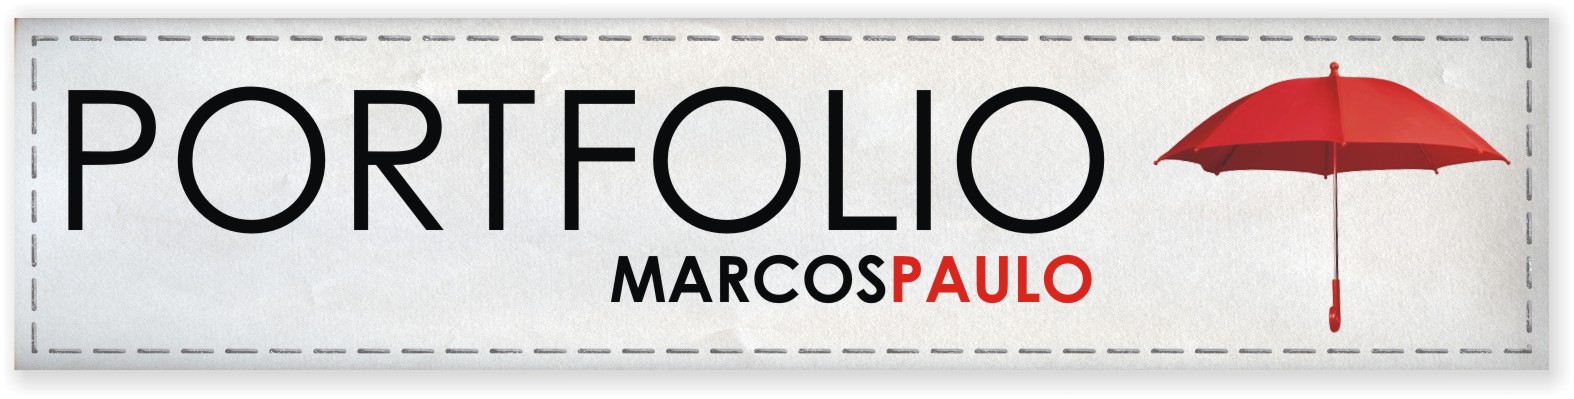 PORTFOLIO MARCOS PAULO